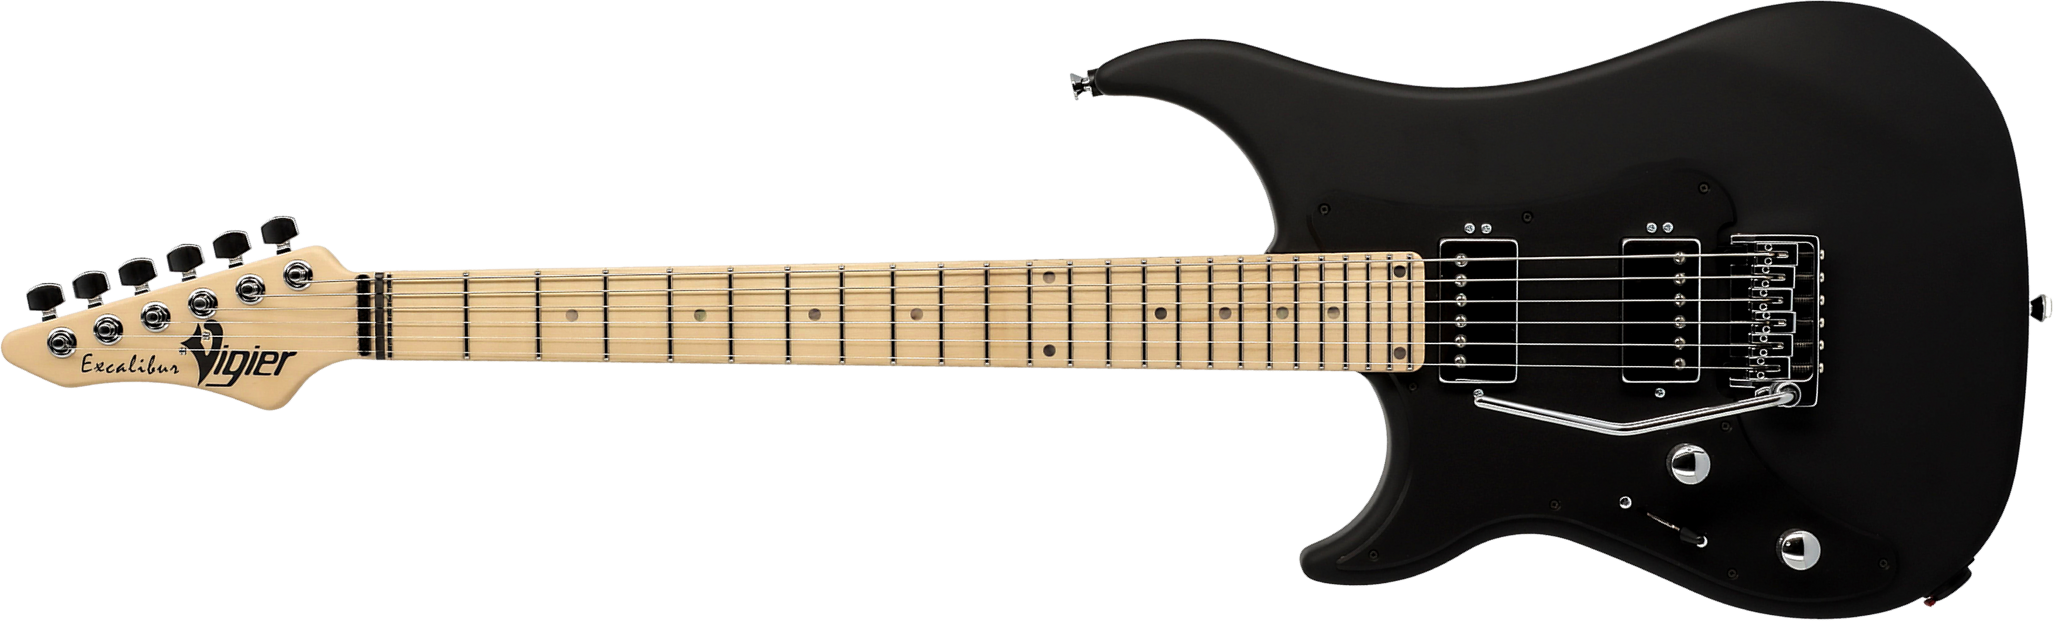 Vigier Excalibur Indus Lh Gaucher 2h Trem Mn - Textured Black - Guitarra electrica para zurdos - Main picture